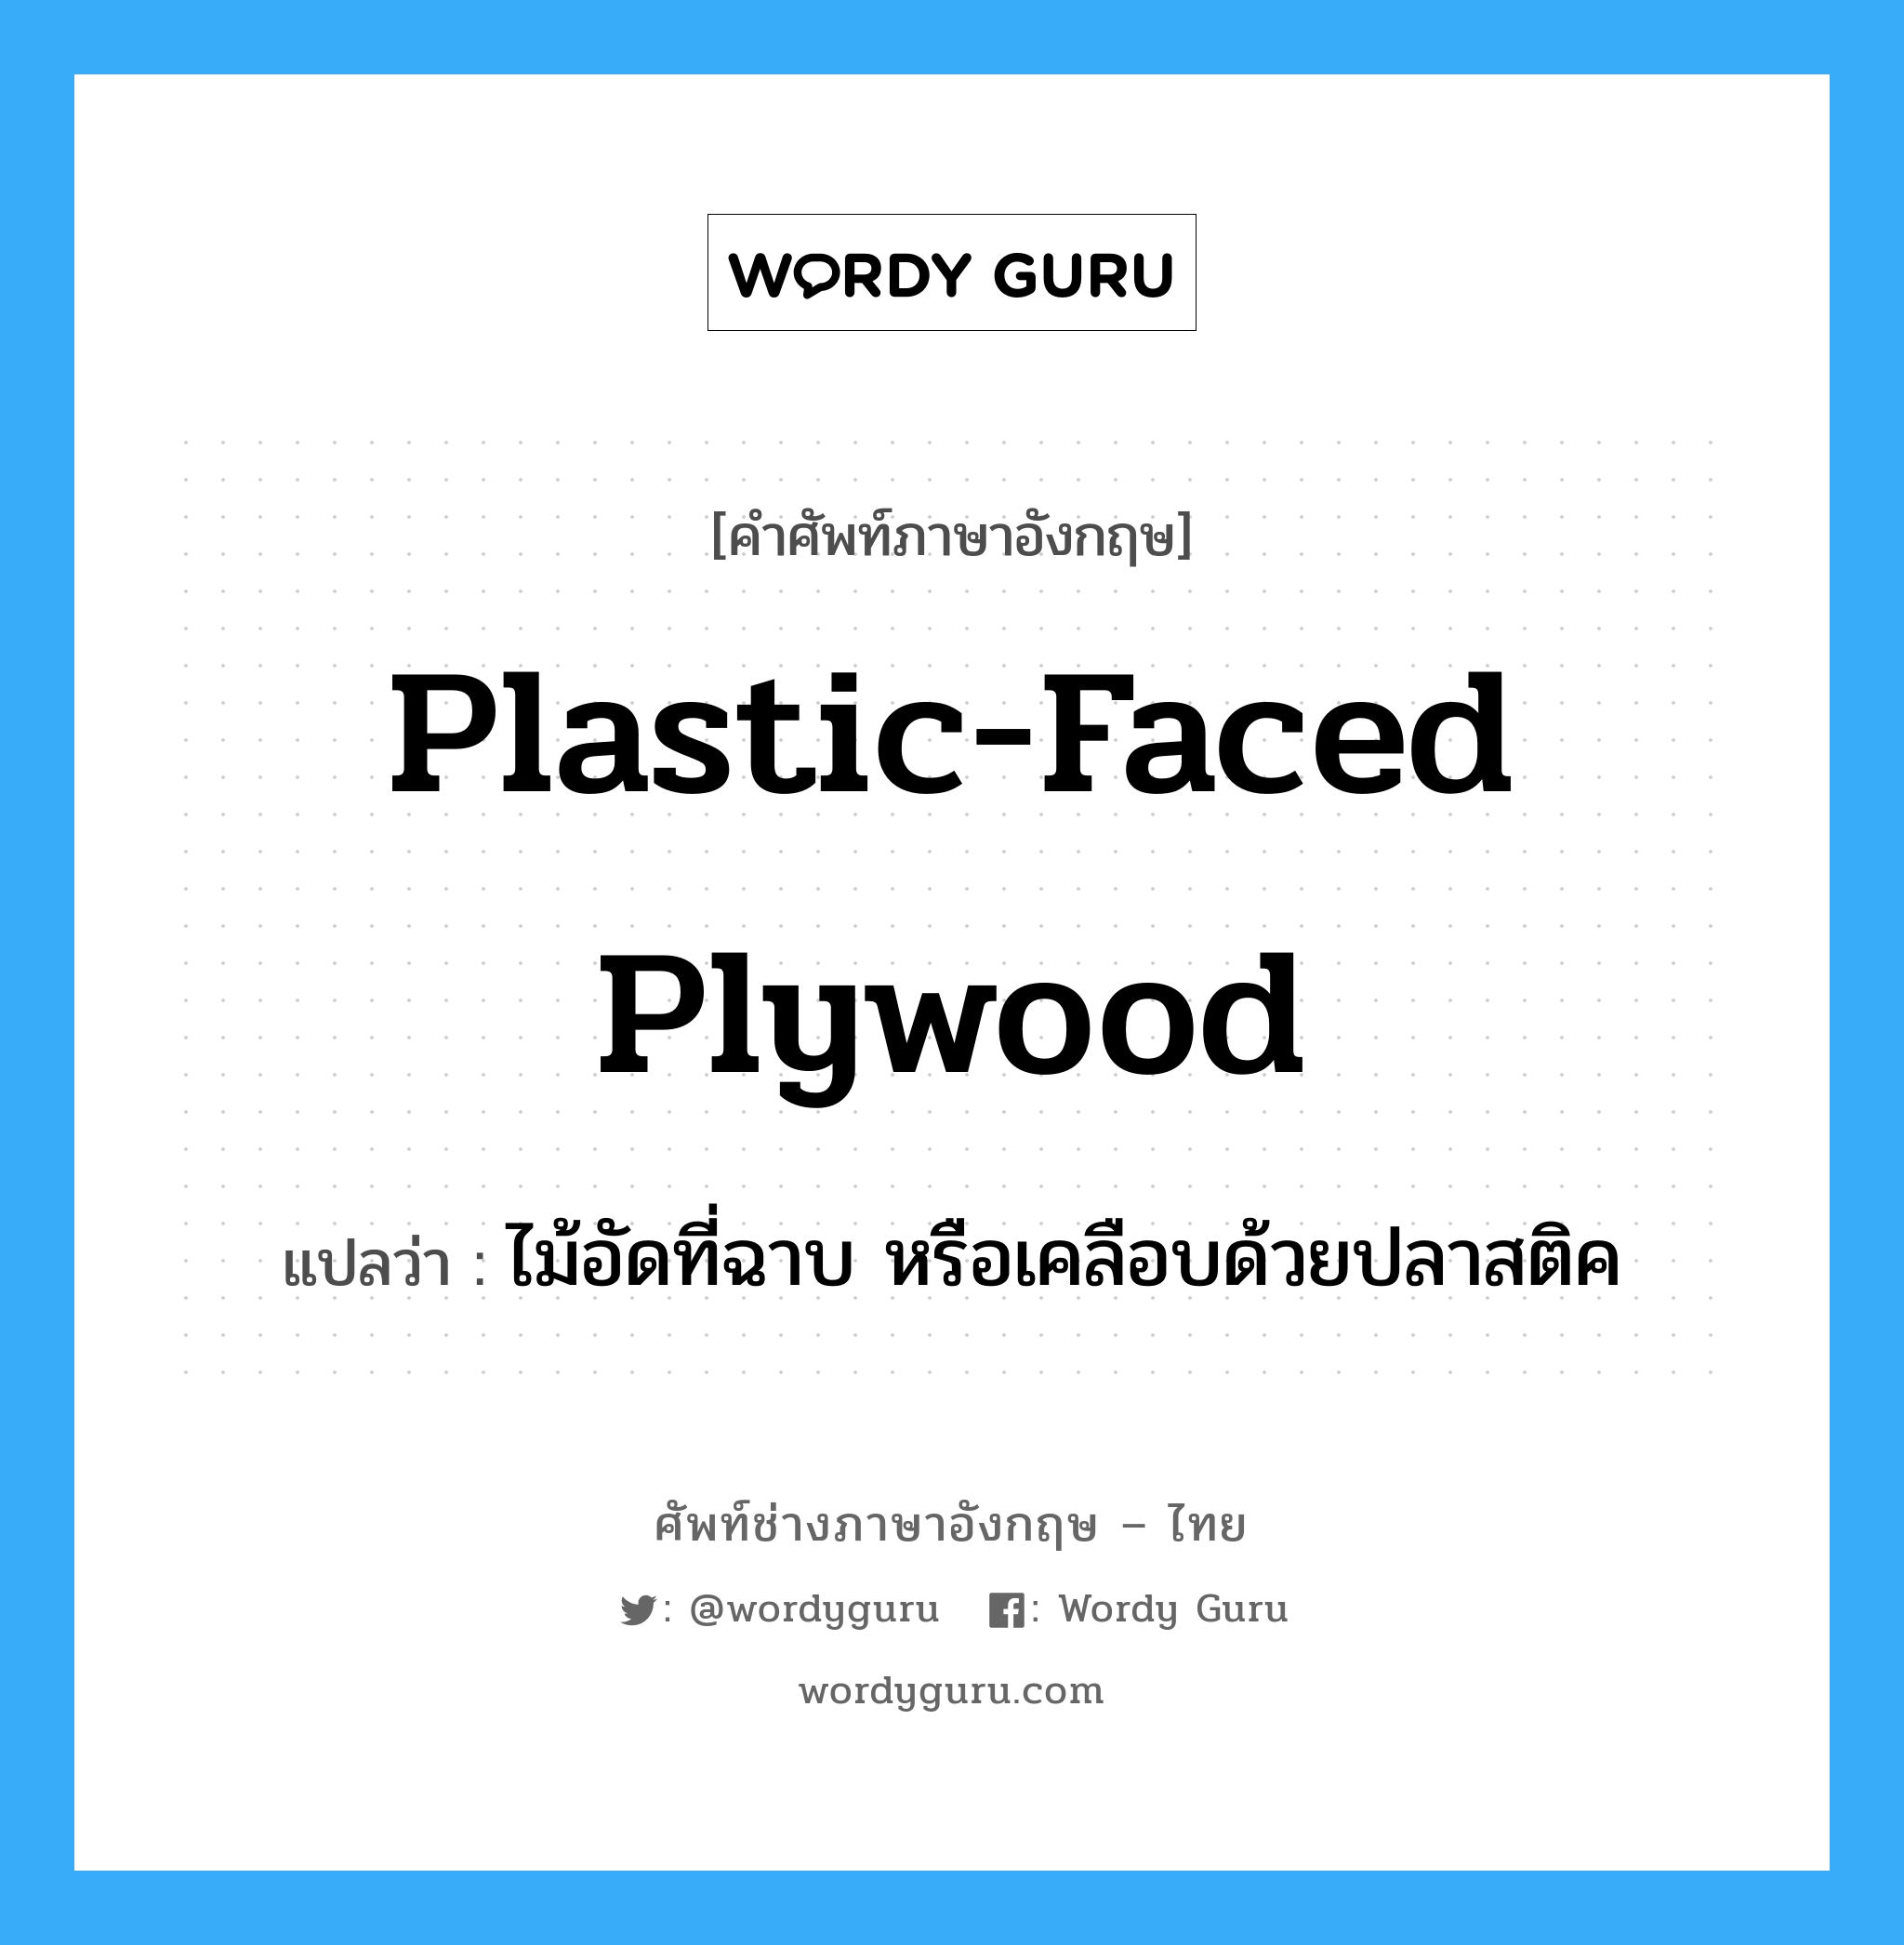 plastic-faced plywood แปลว่า?, คำศัพท์ช่างภาษาอังกฤษ - ไทย plastic-faced plywood คำศัพท์ภาษาอังกฤษ plastic-faced plywood แปลว่า ไม้อัดที่ฉาบ หรือเคลือบด้วยปลาสติค